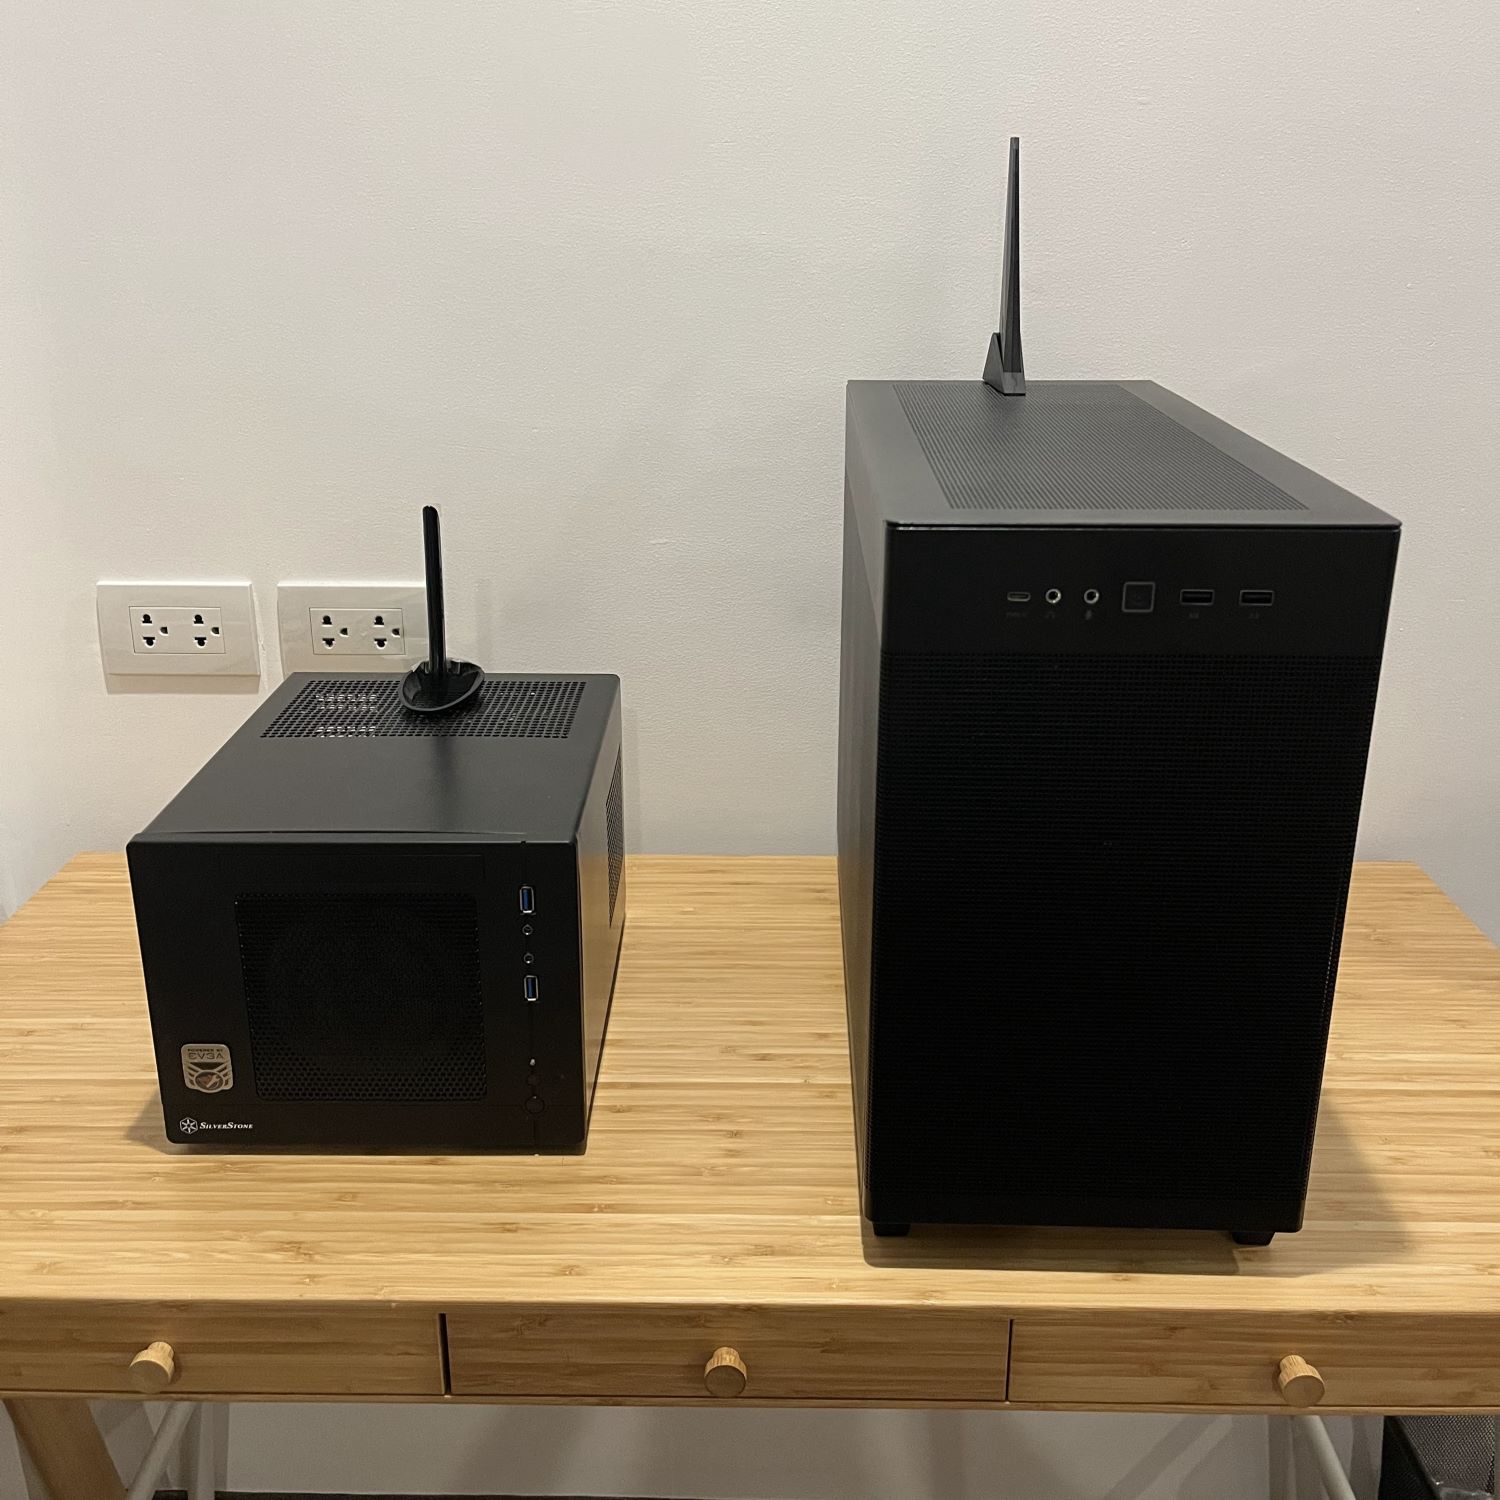 Old PC vs New PC